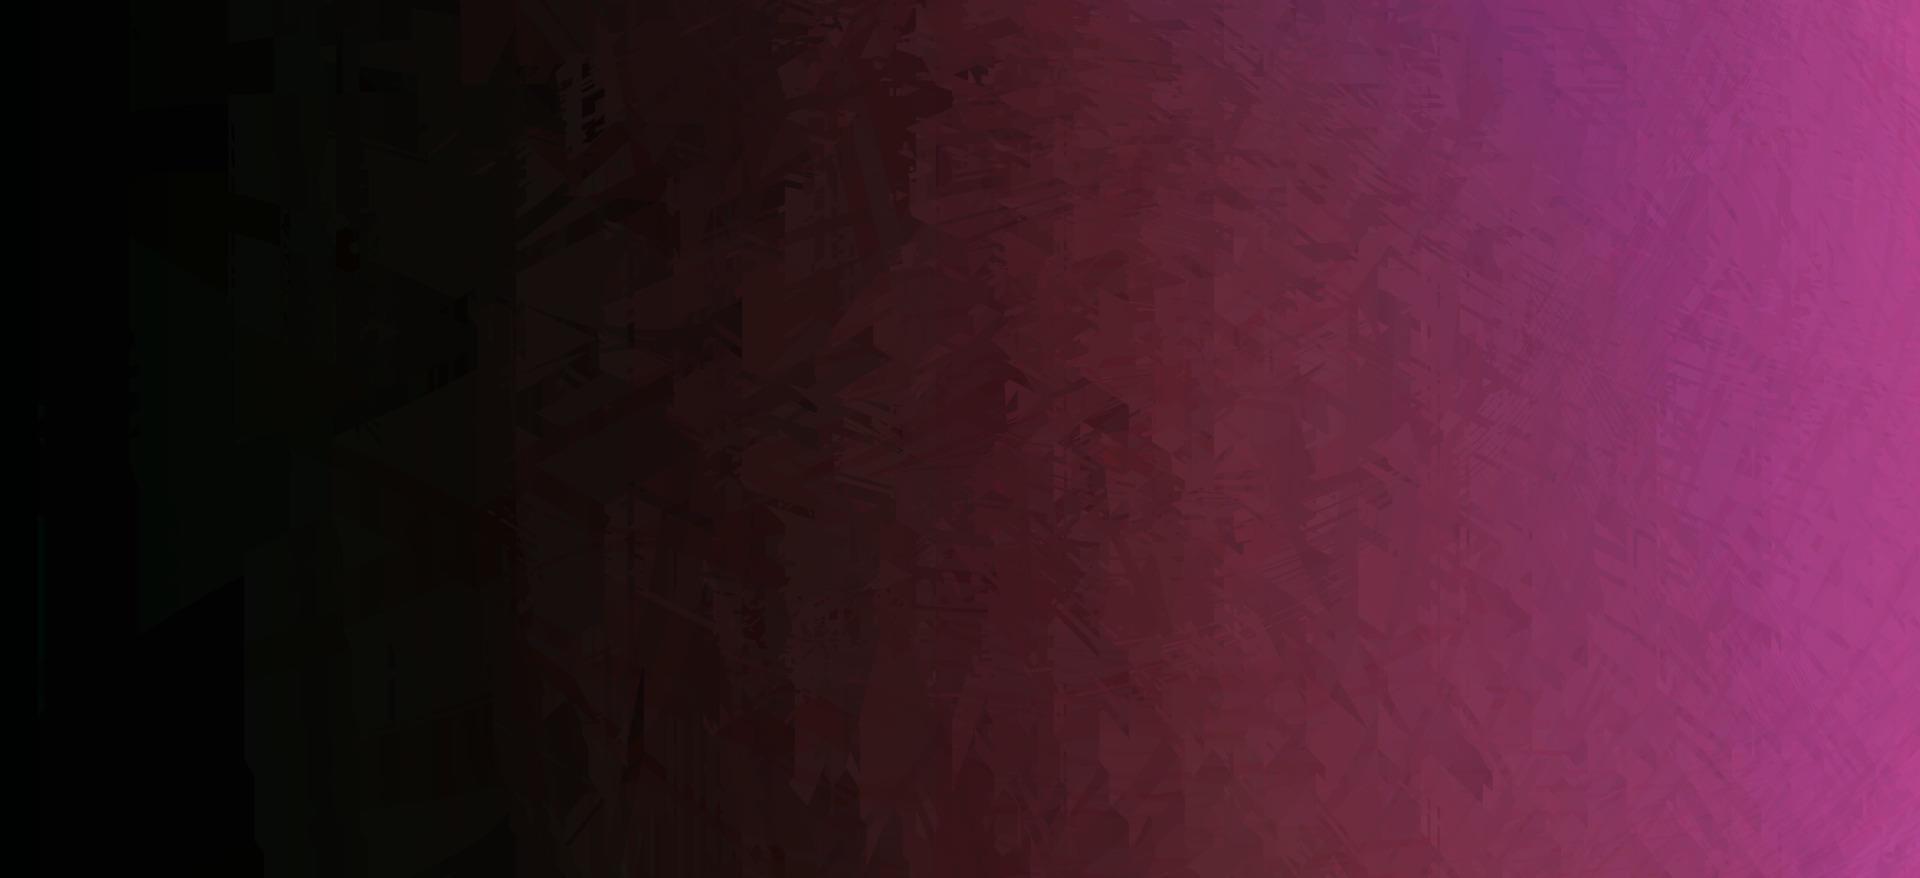 donker bruin en Purper waterverf helling abstract vector ontwerp. futuristische backdrop voor poster, brochure, spandoek. waterverf achtergrond in Purper helling kleuren. uitnodiging of bruiloft kaarten.